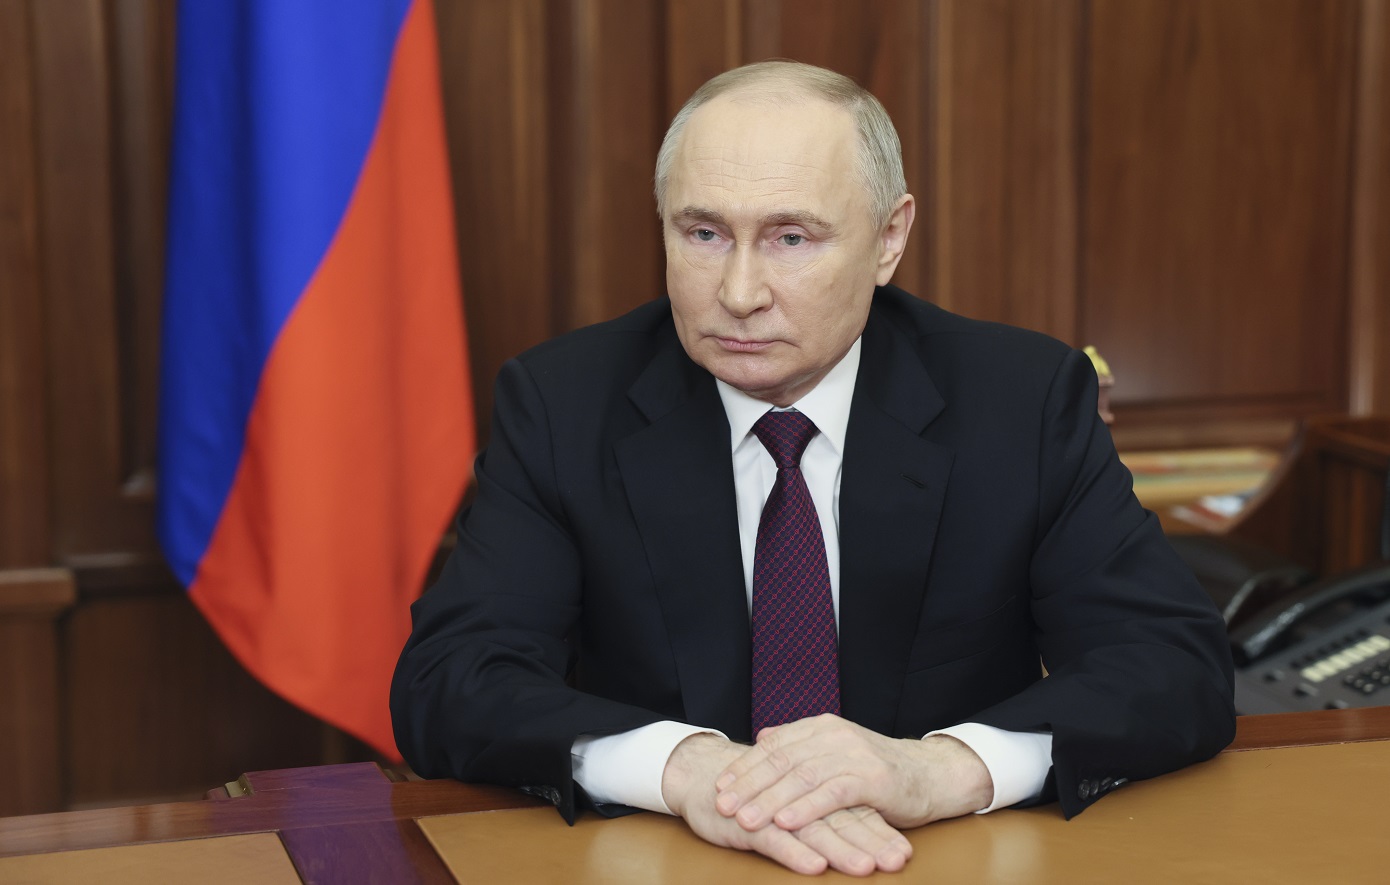 Οι Αρχές επισημοποίησαν την εκλογική νίκη του Πούτιν